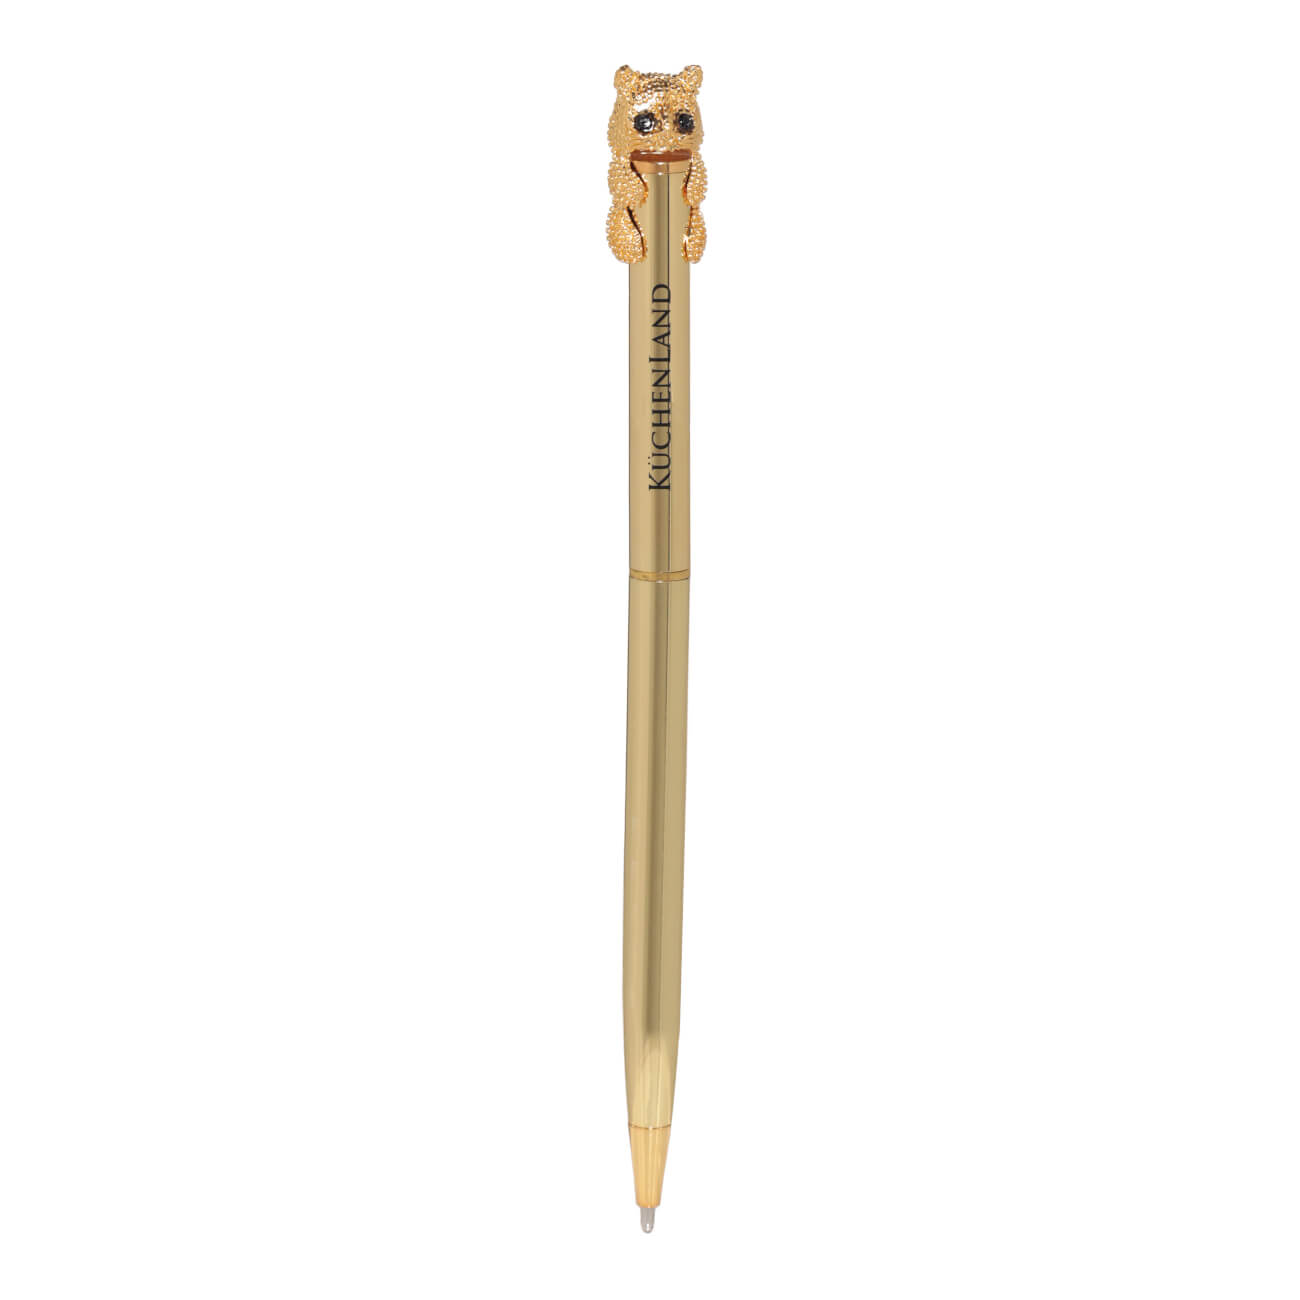 Ручка шариковая, 14 см, с фигуркой, золотистая, Кот, Draw figure карандаш 18 см чернографитный с фигуркой золотистый кот draw